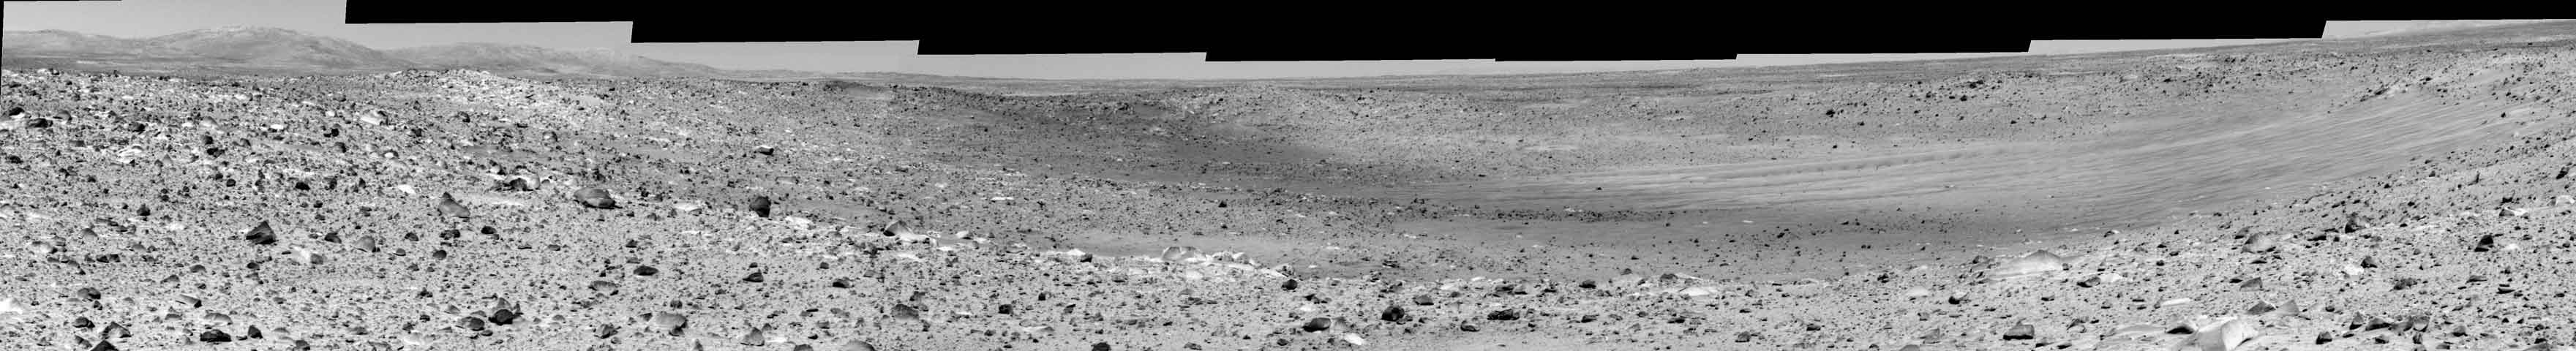 Missoula cratère sur Mars